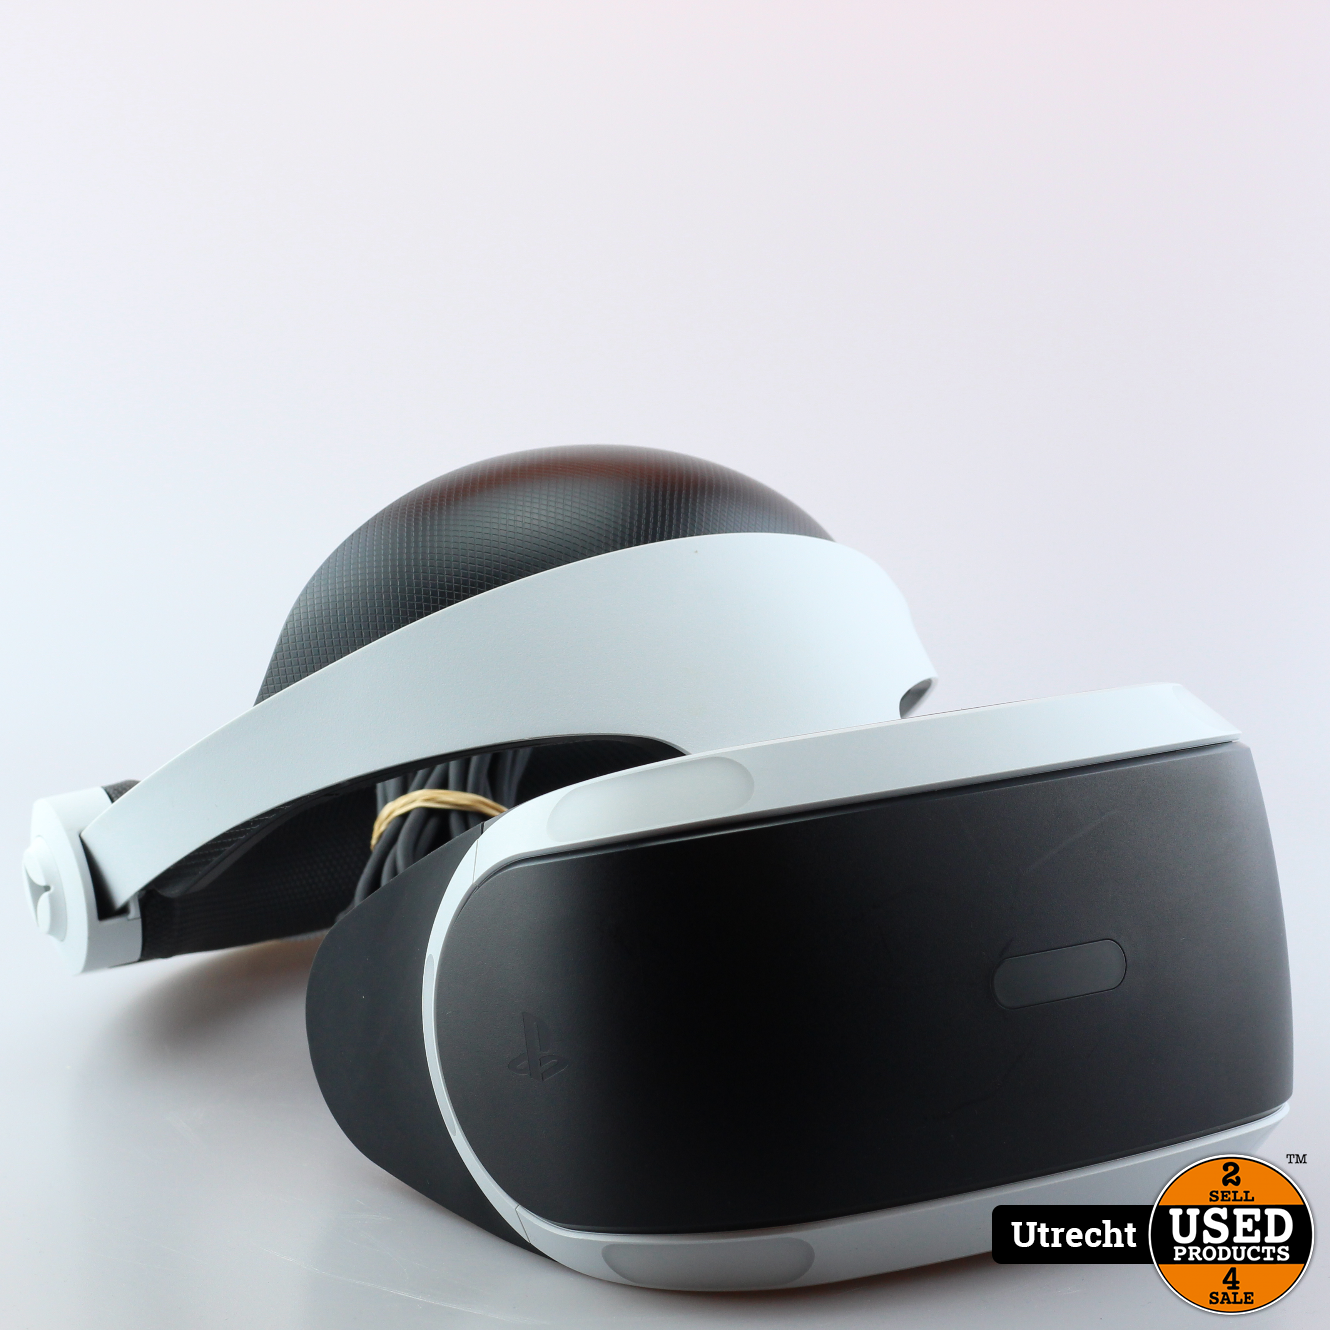 welvaart Vermaken George Eliot Playstation VR Incl. Camera | Nette Staat - Used Products Utrecht